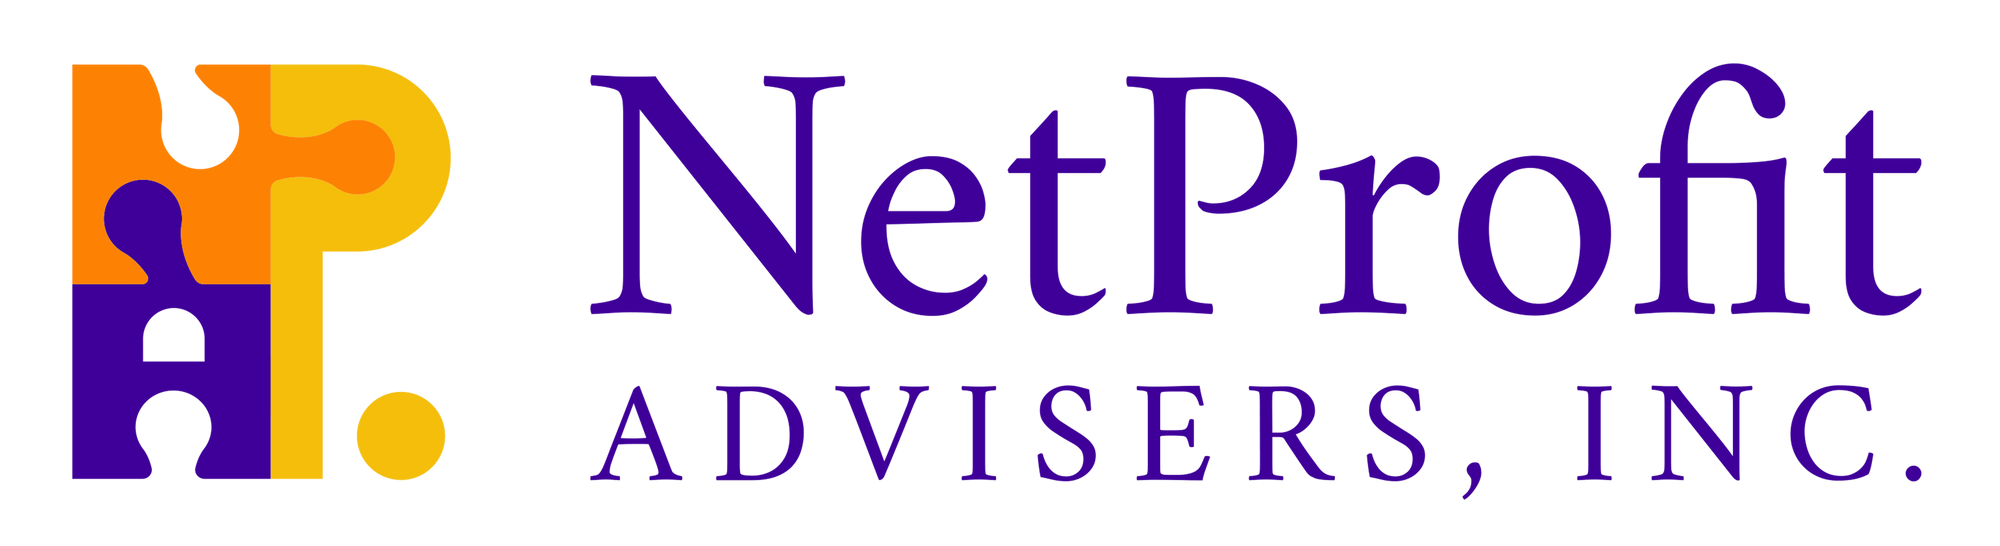 NetProfit Advisers, Inc. 